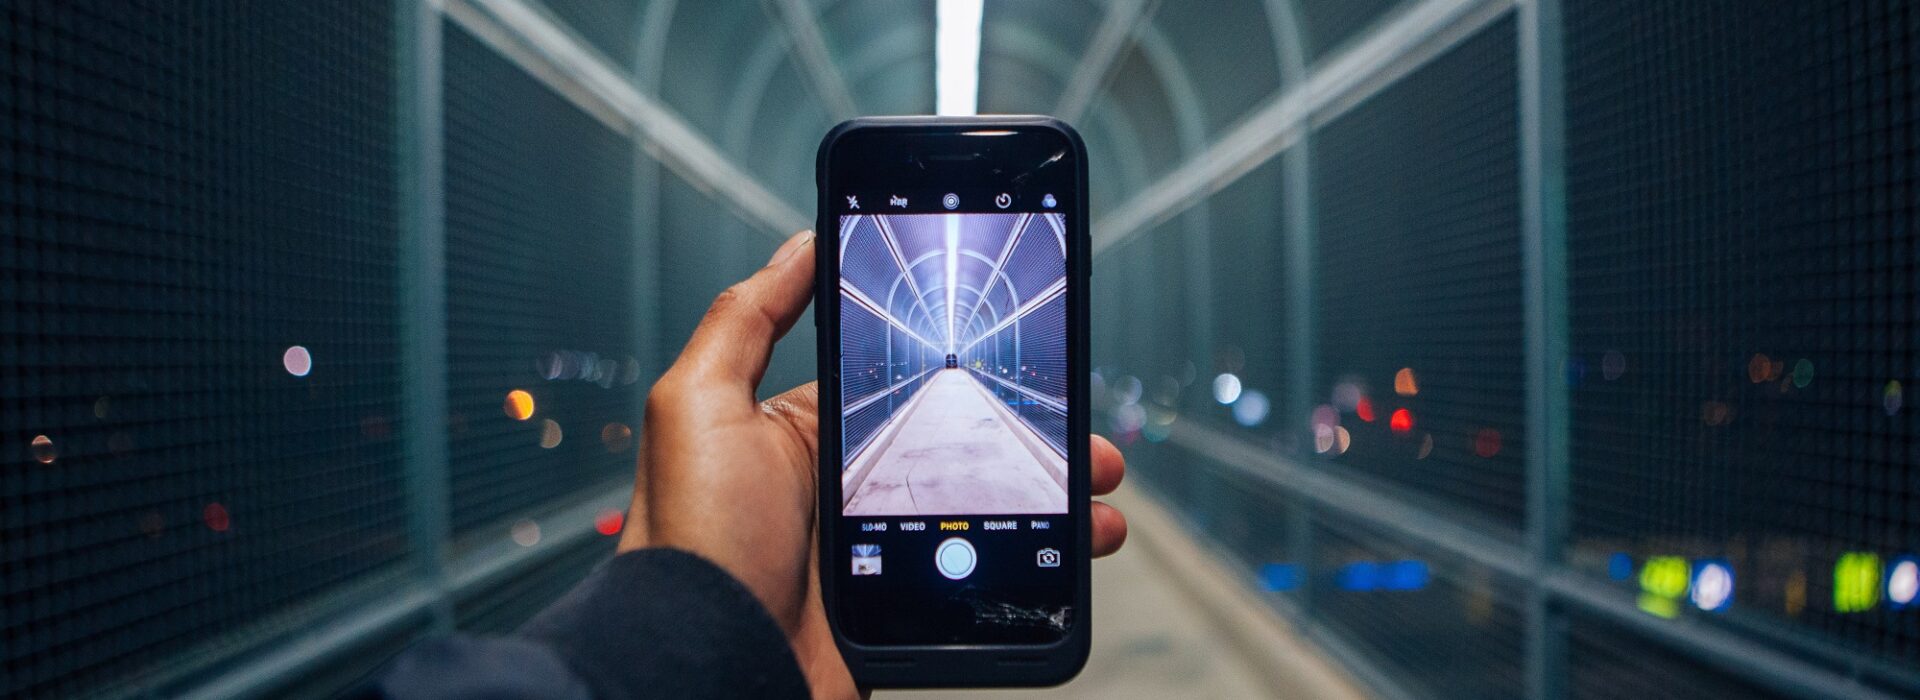 TikTok: Via Smartphone wird ein überdachter Tunnel gefilmt.